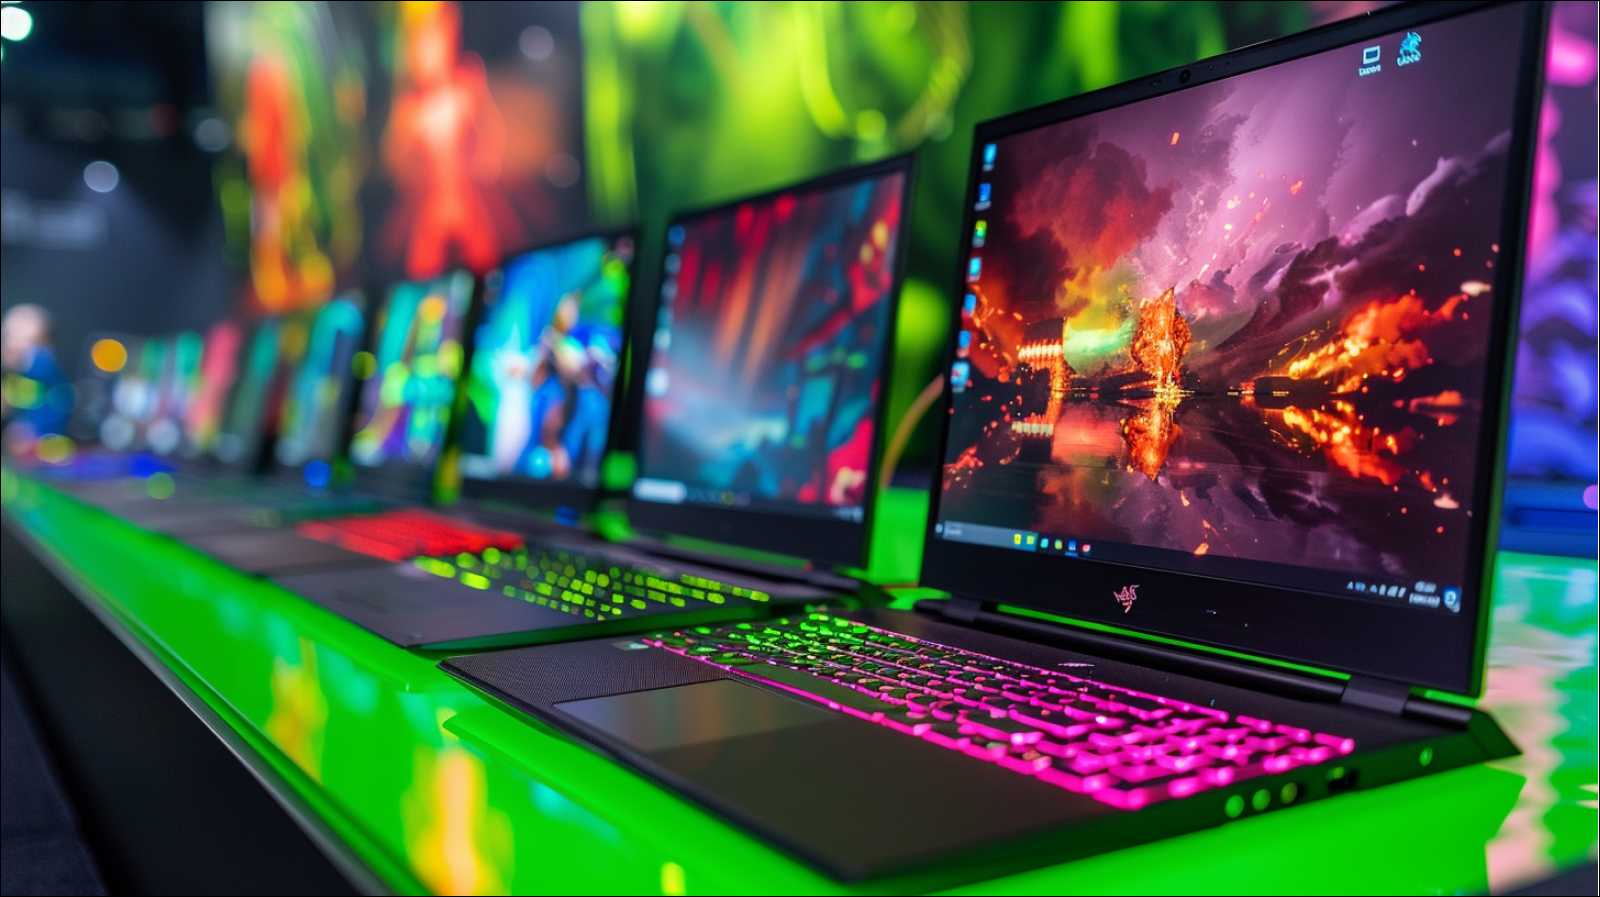 Auf einer hellgrünen Oberfläche sind eine Reihe von Gaming-Laptops, mit einer lebendigen animierten Szene auf dem Bildschirm